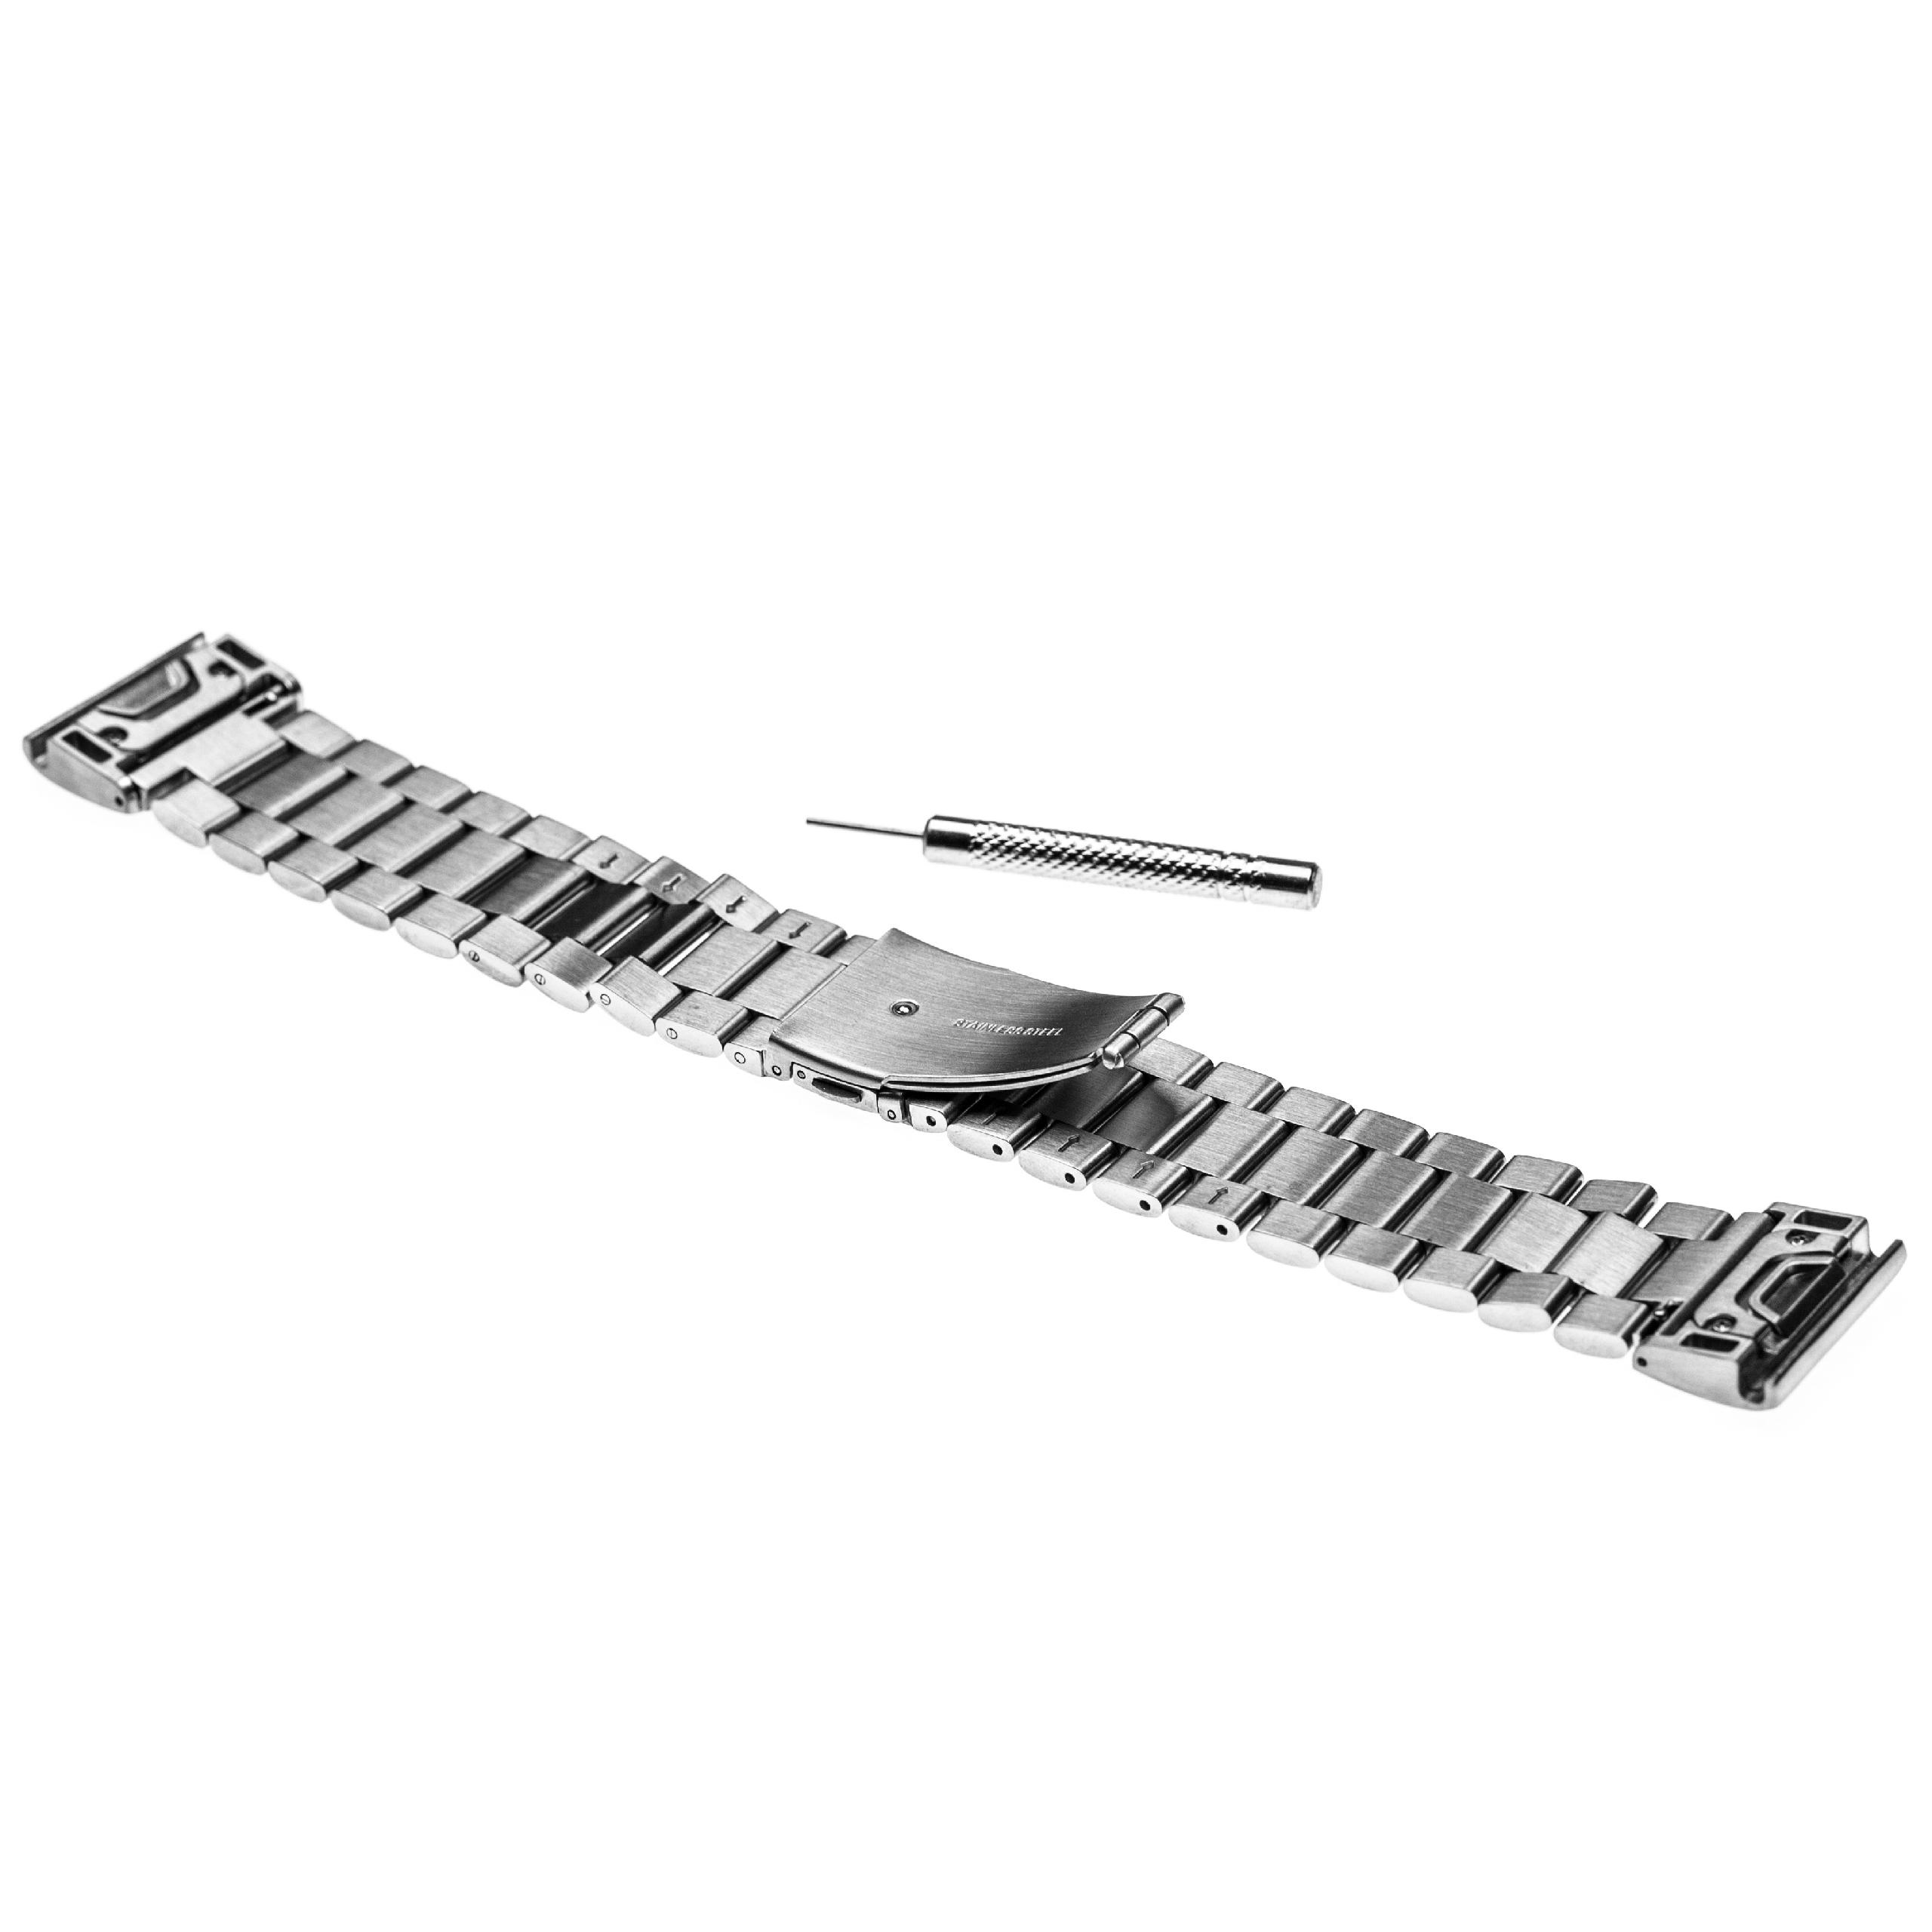 Bracelet pour montre intelligente Garmin Fenix - 20,4 cm de long, 26mm de large, acier inoxydable, argenté